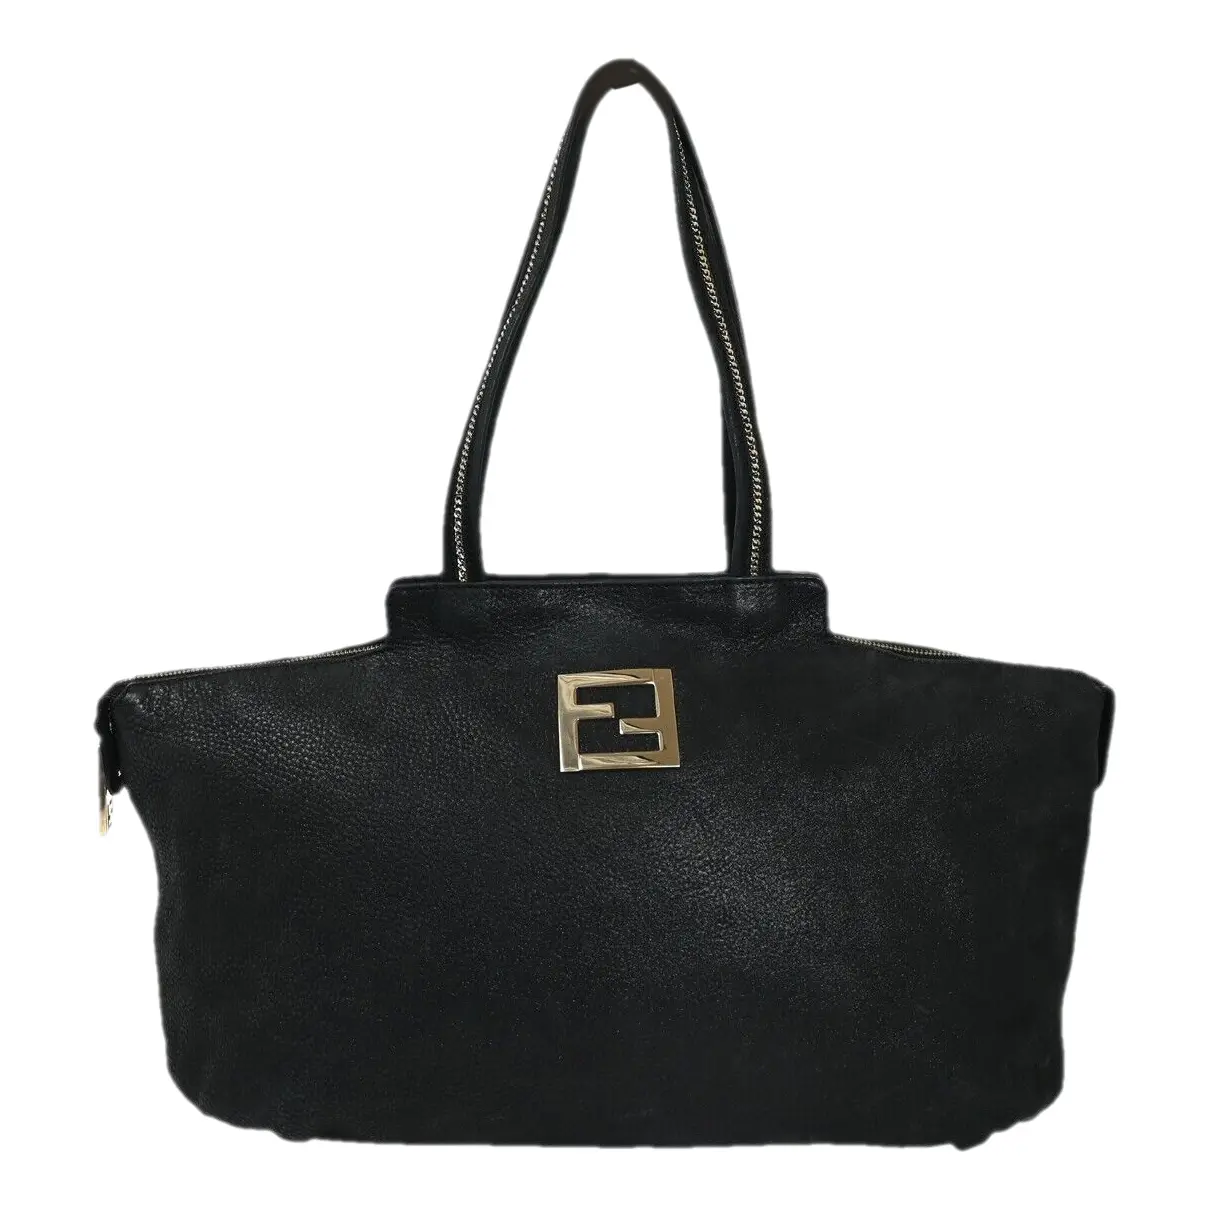 FF leather handbag